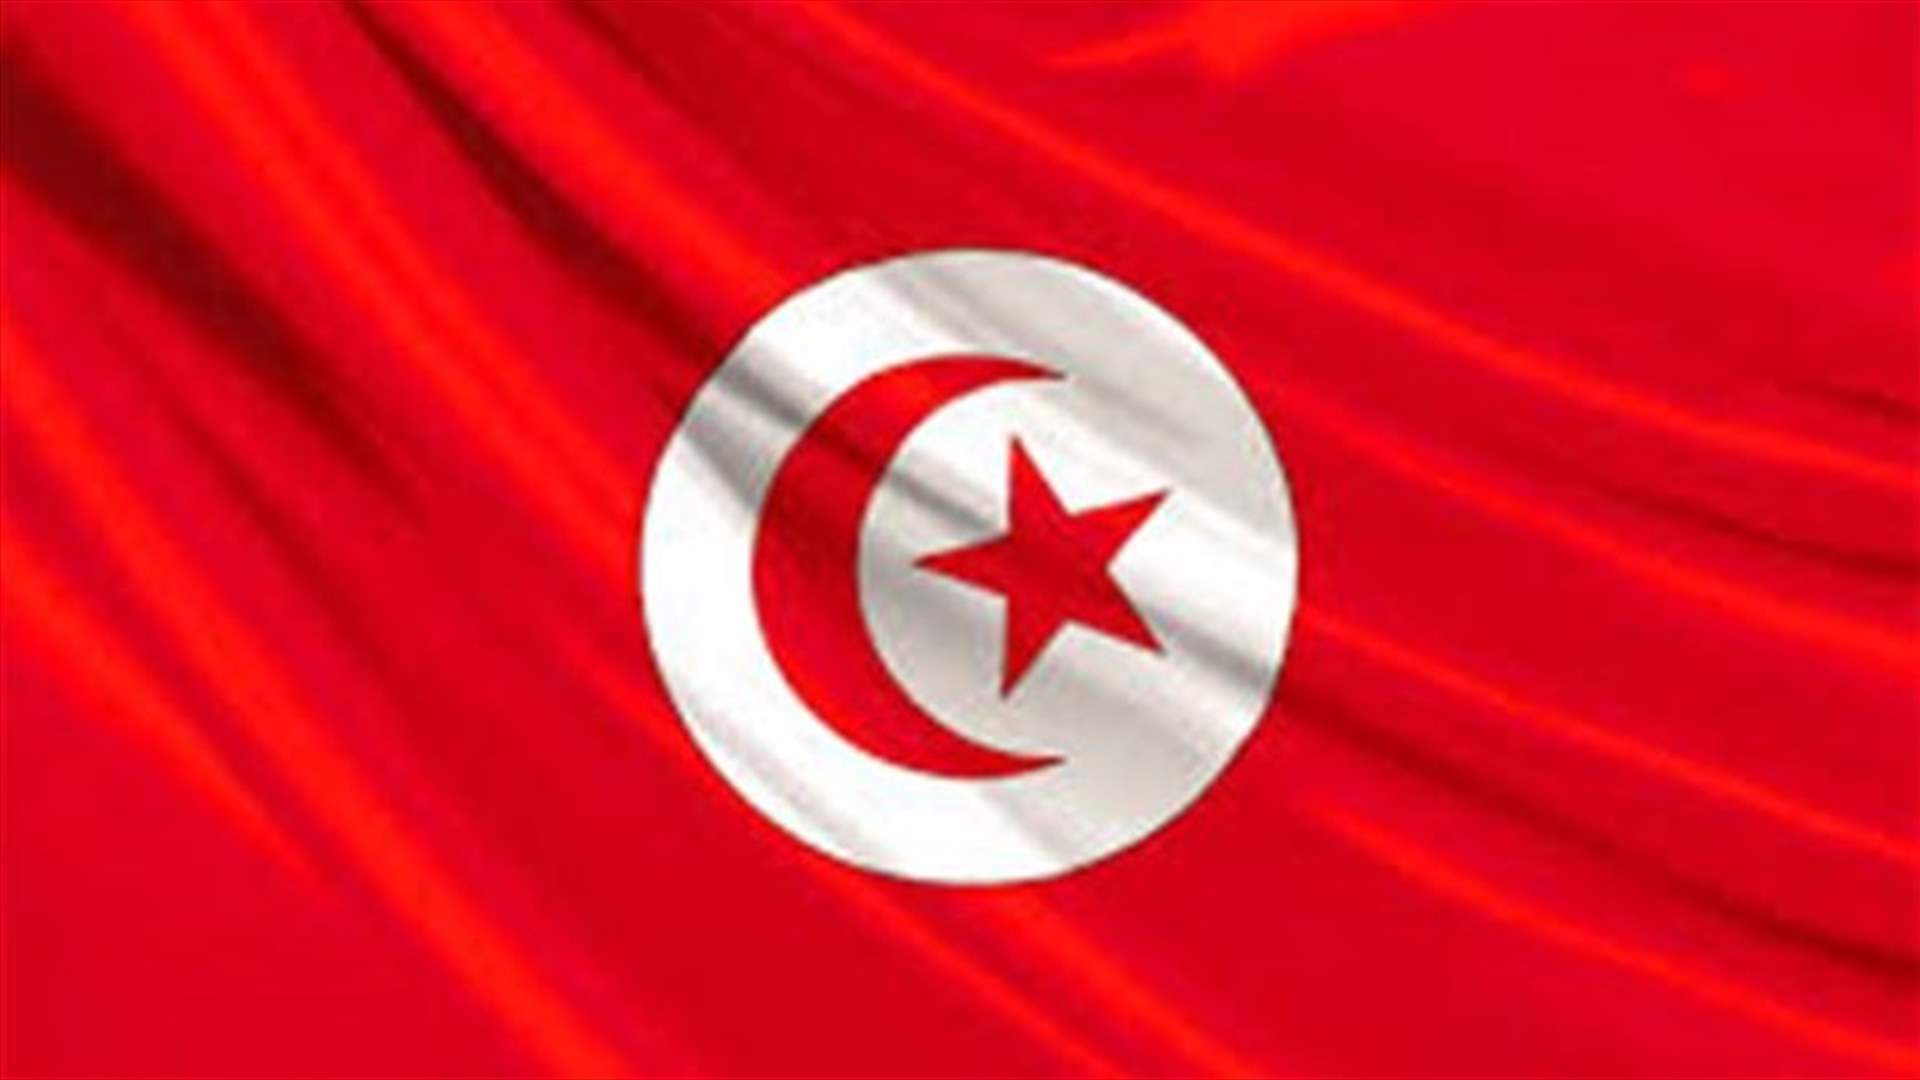 مقتل عنصر من الحرس الوطني في تونس